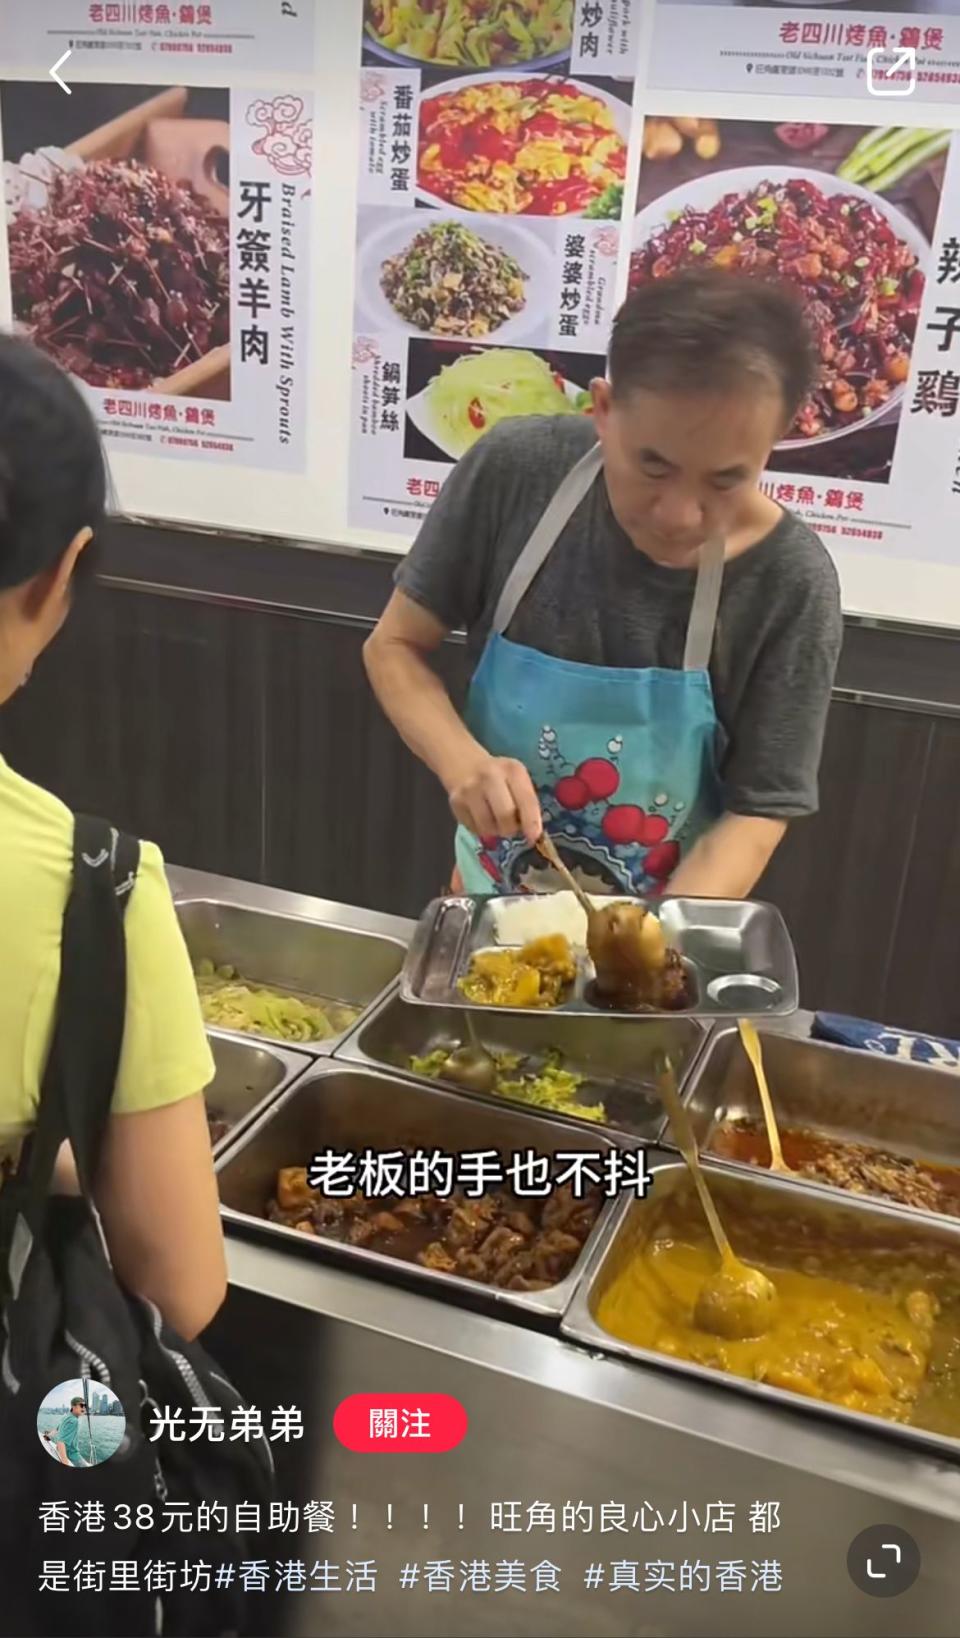 旺角川菜農家樂湛江私房菜 午市推$38放題 20款餸菜免費任添 內地網友:在香港最平一餐